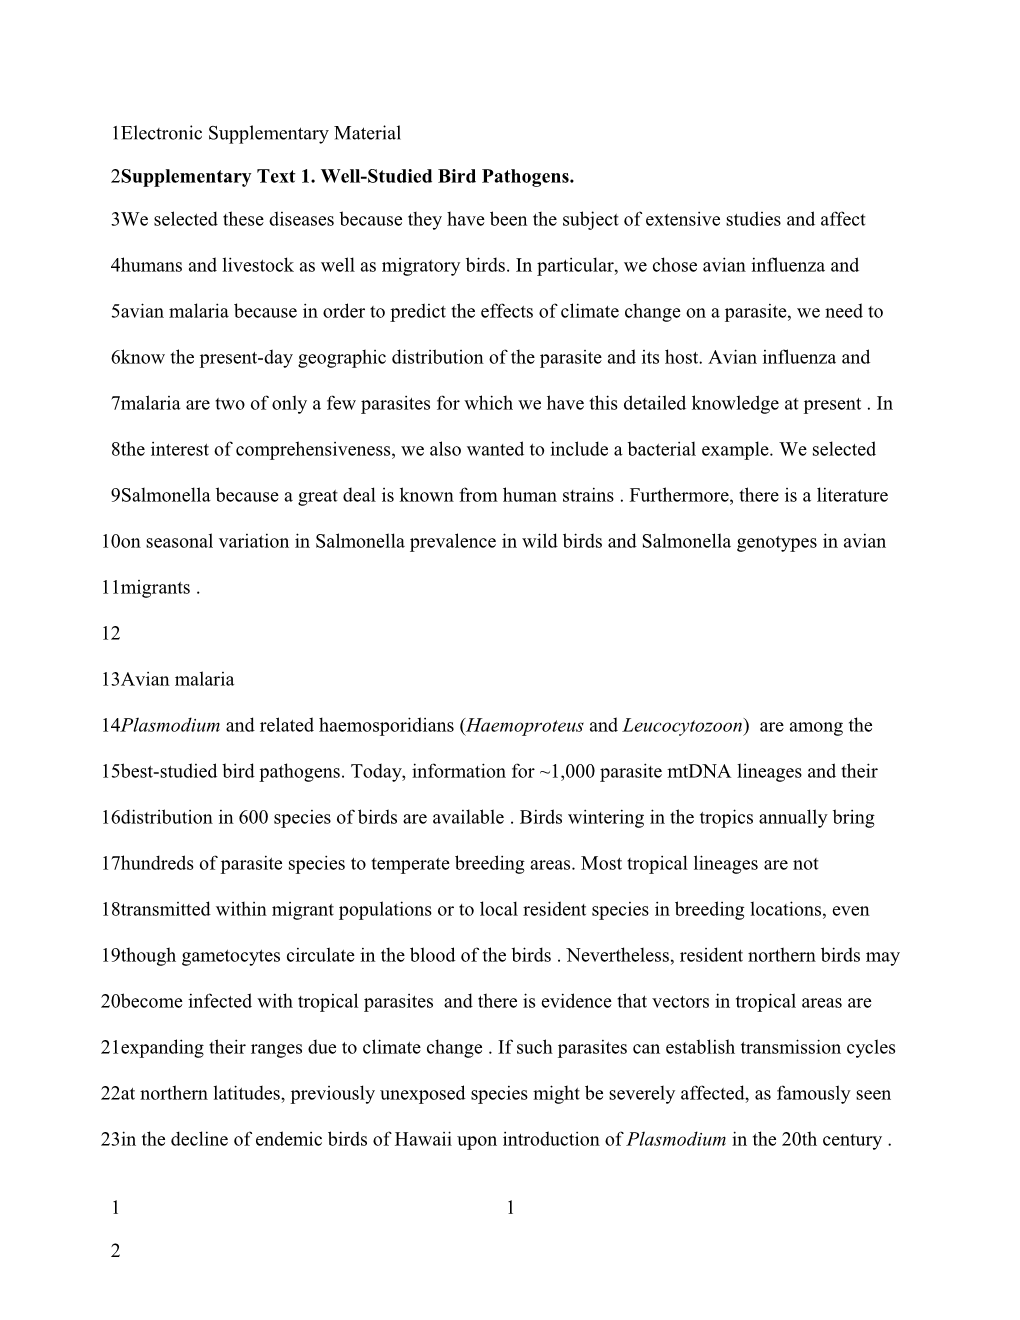 Supplementary Text 1. Well-Studied Bird Pathogens